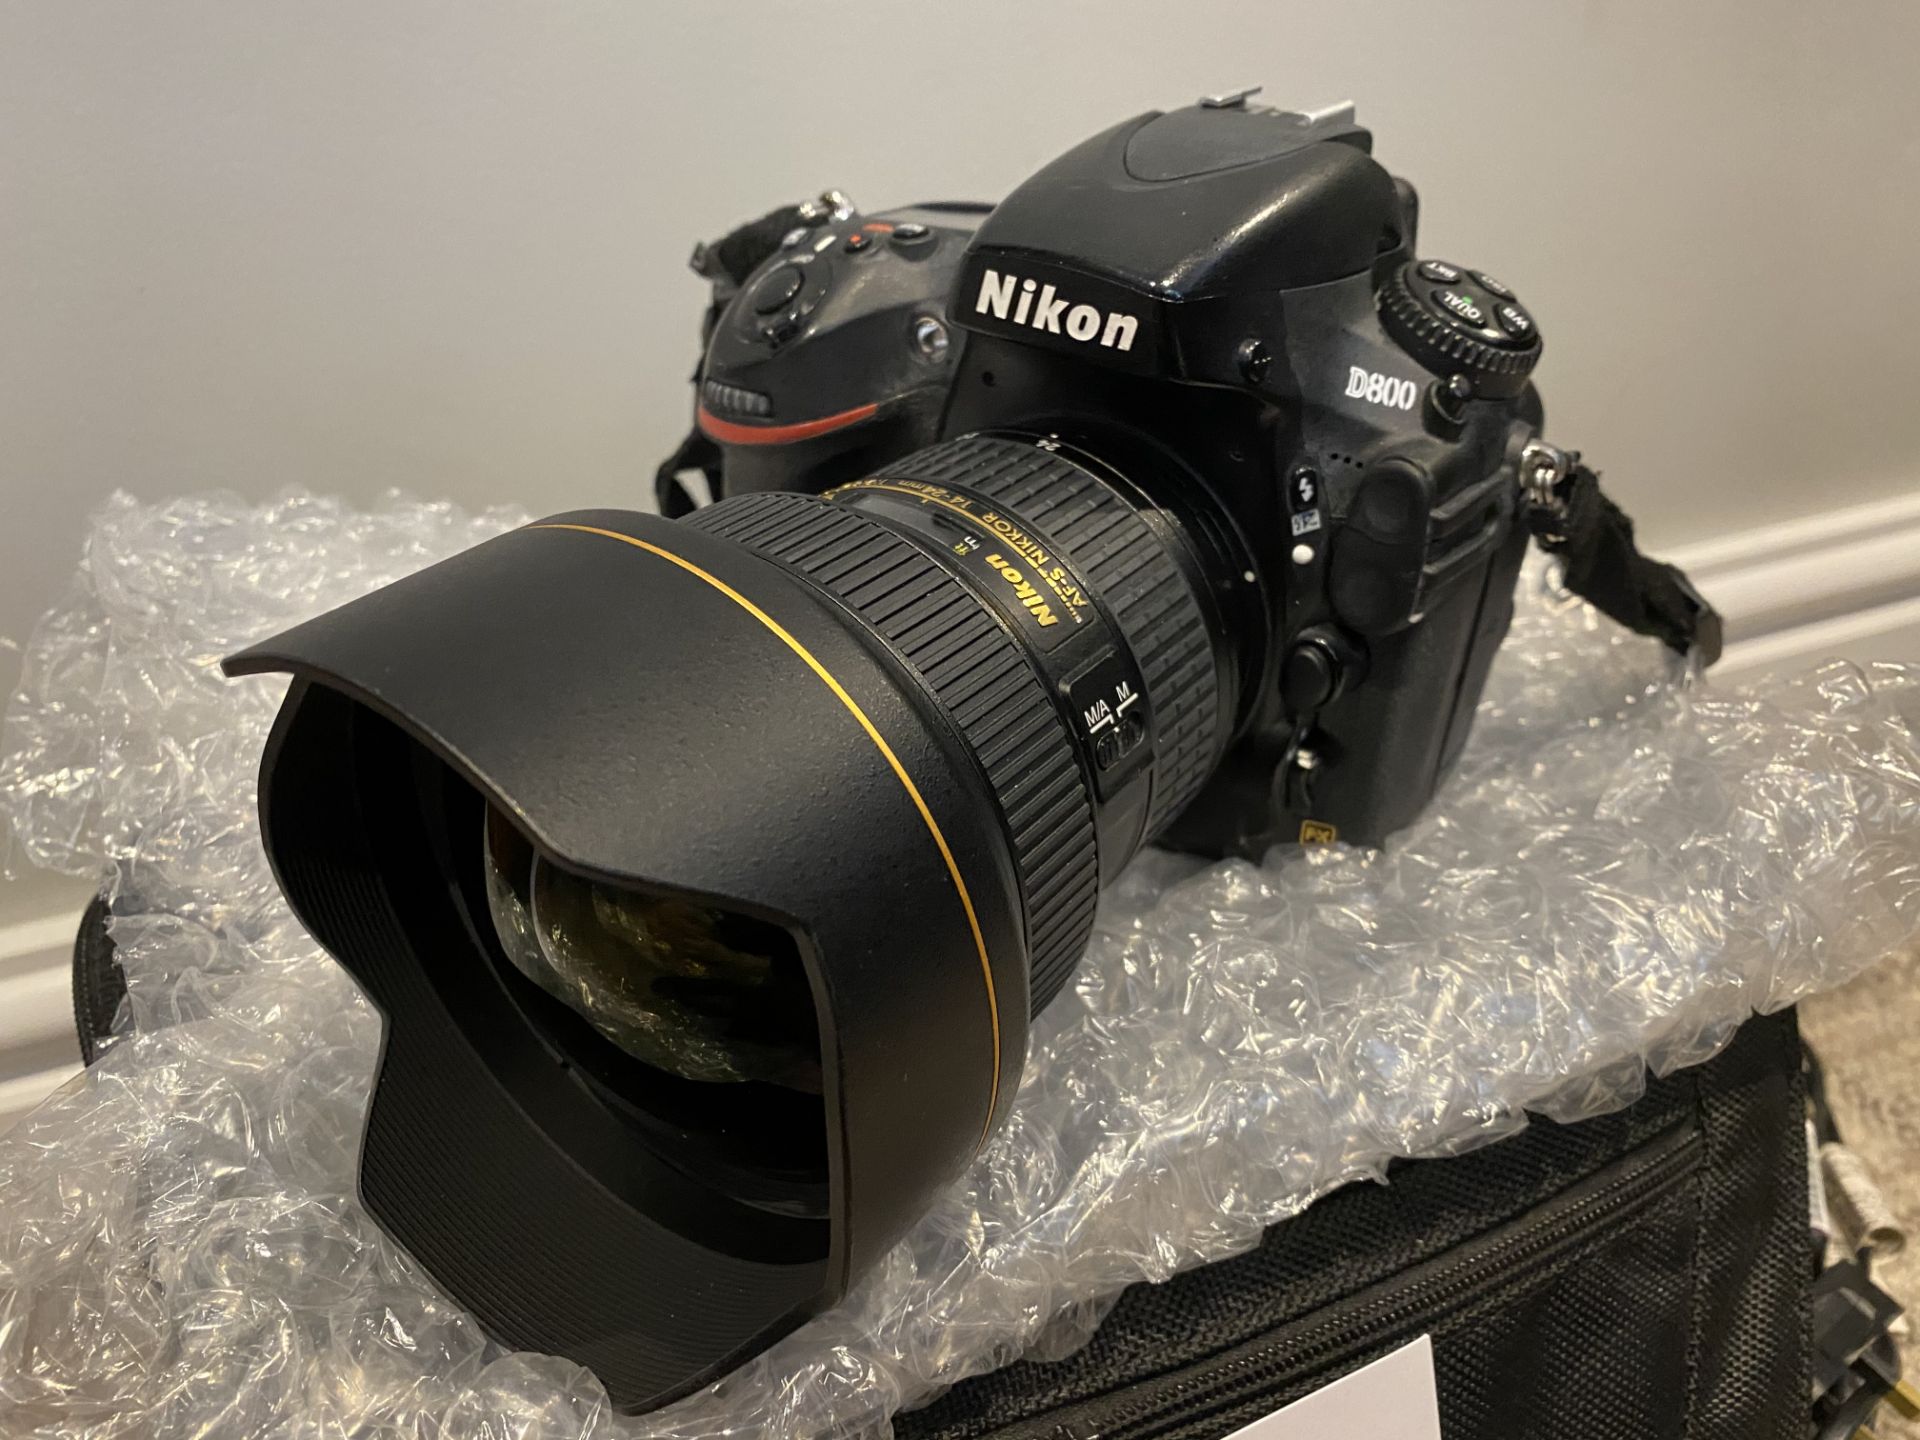 Nikon D800 Digital Camera & Nikon AF-S Nikkor 14-24mm Lense - Image 2 of 5